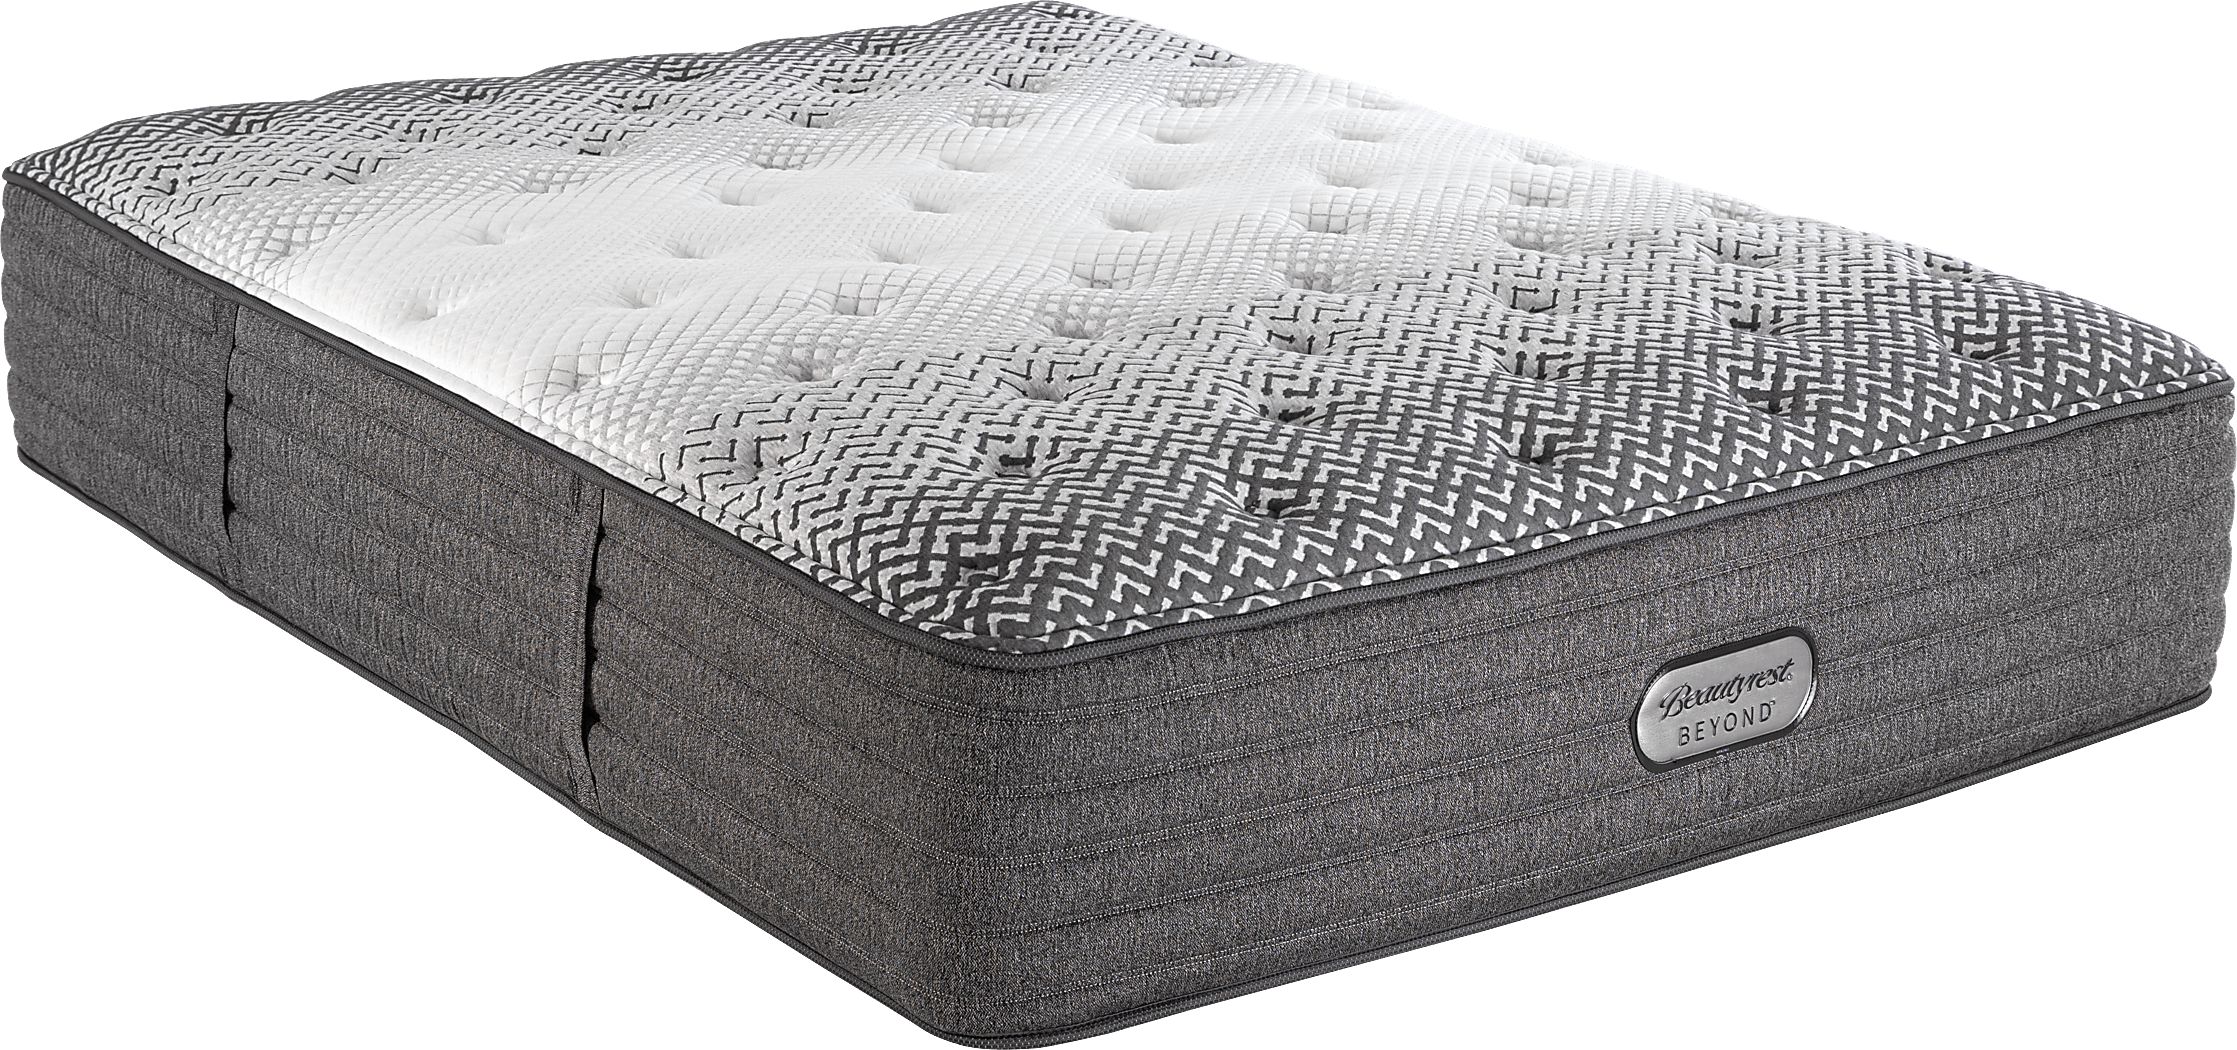 beautyrest beyond 15 extra firm mattress